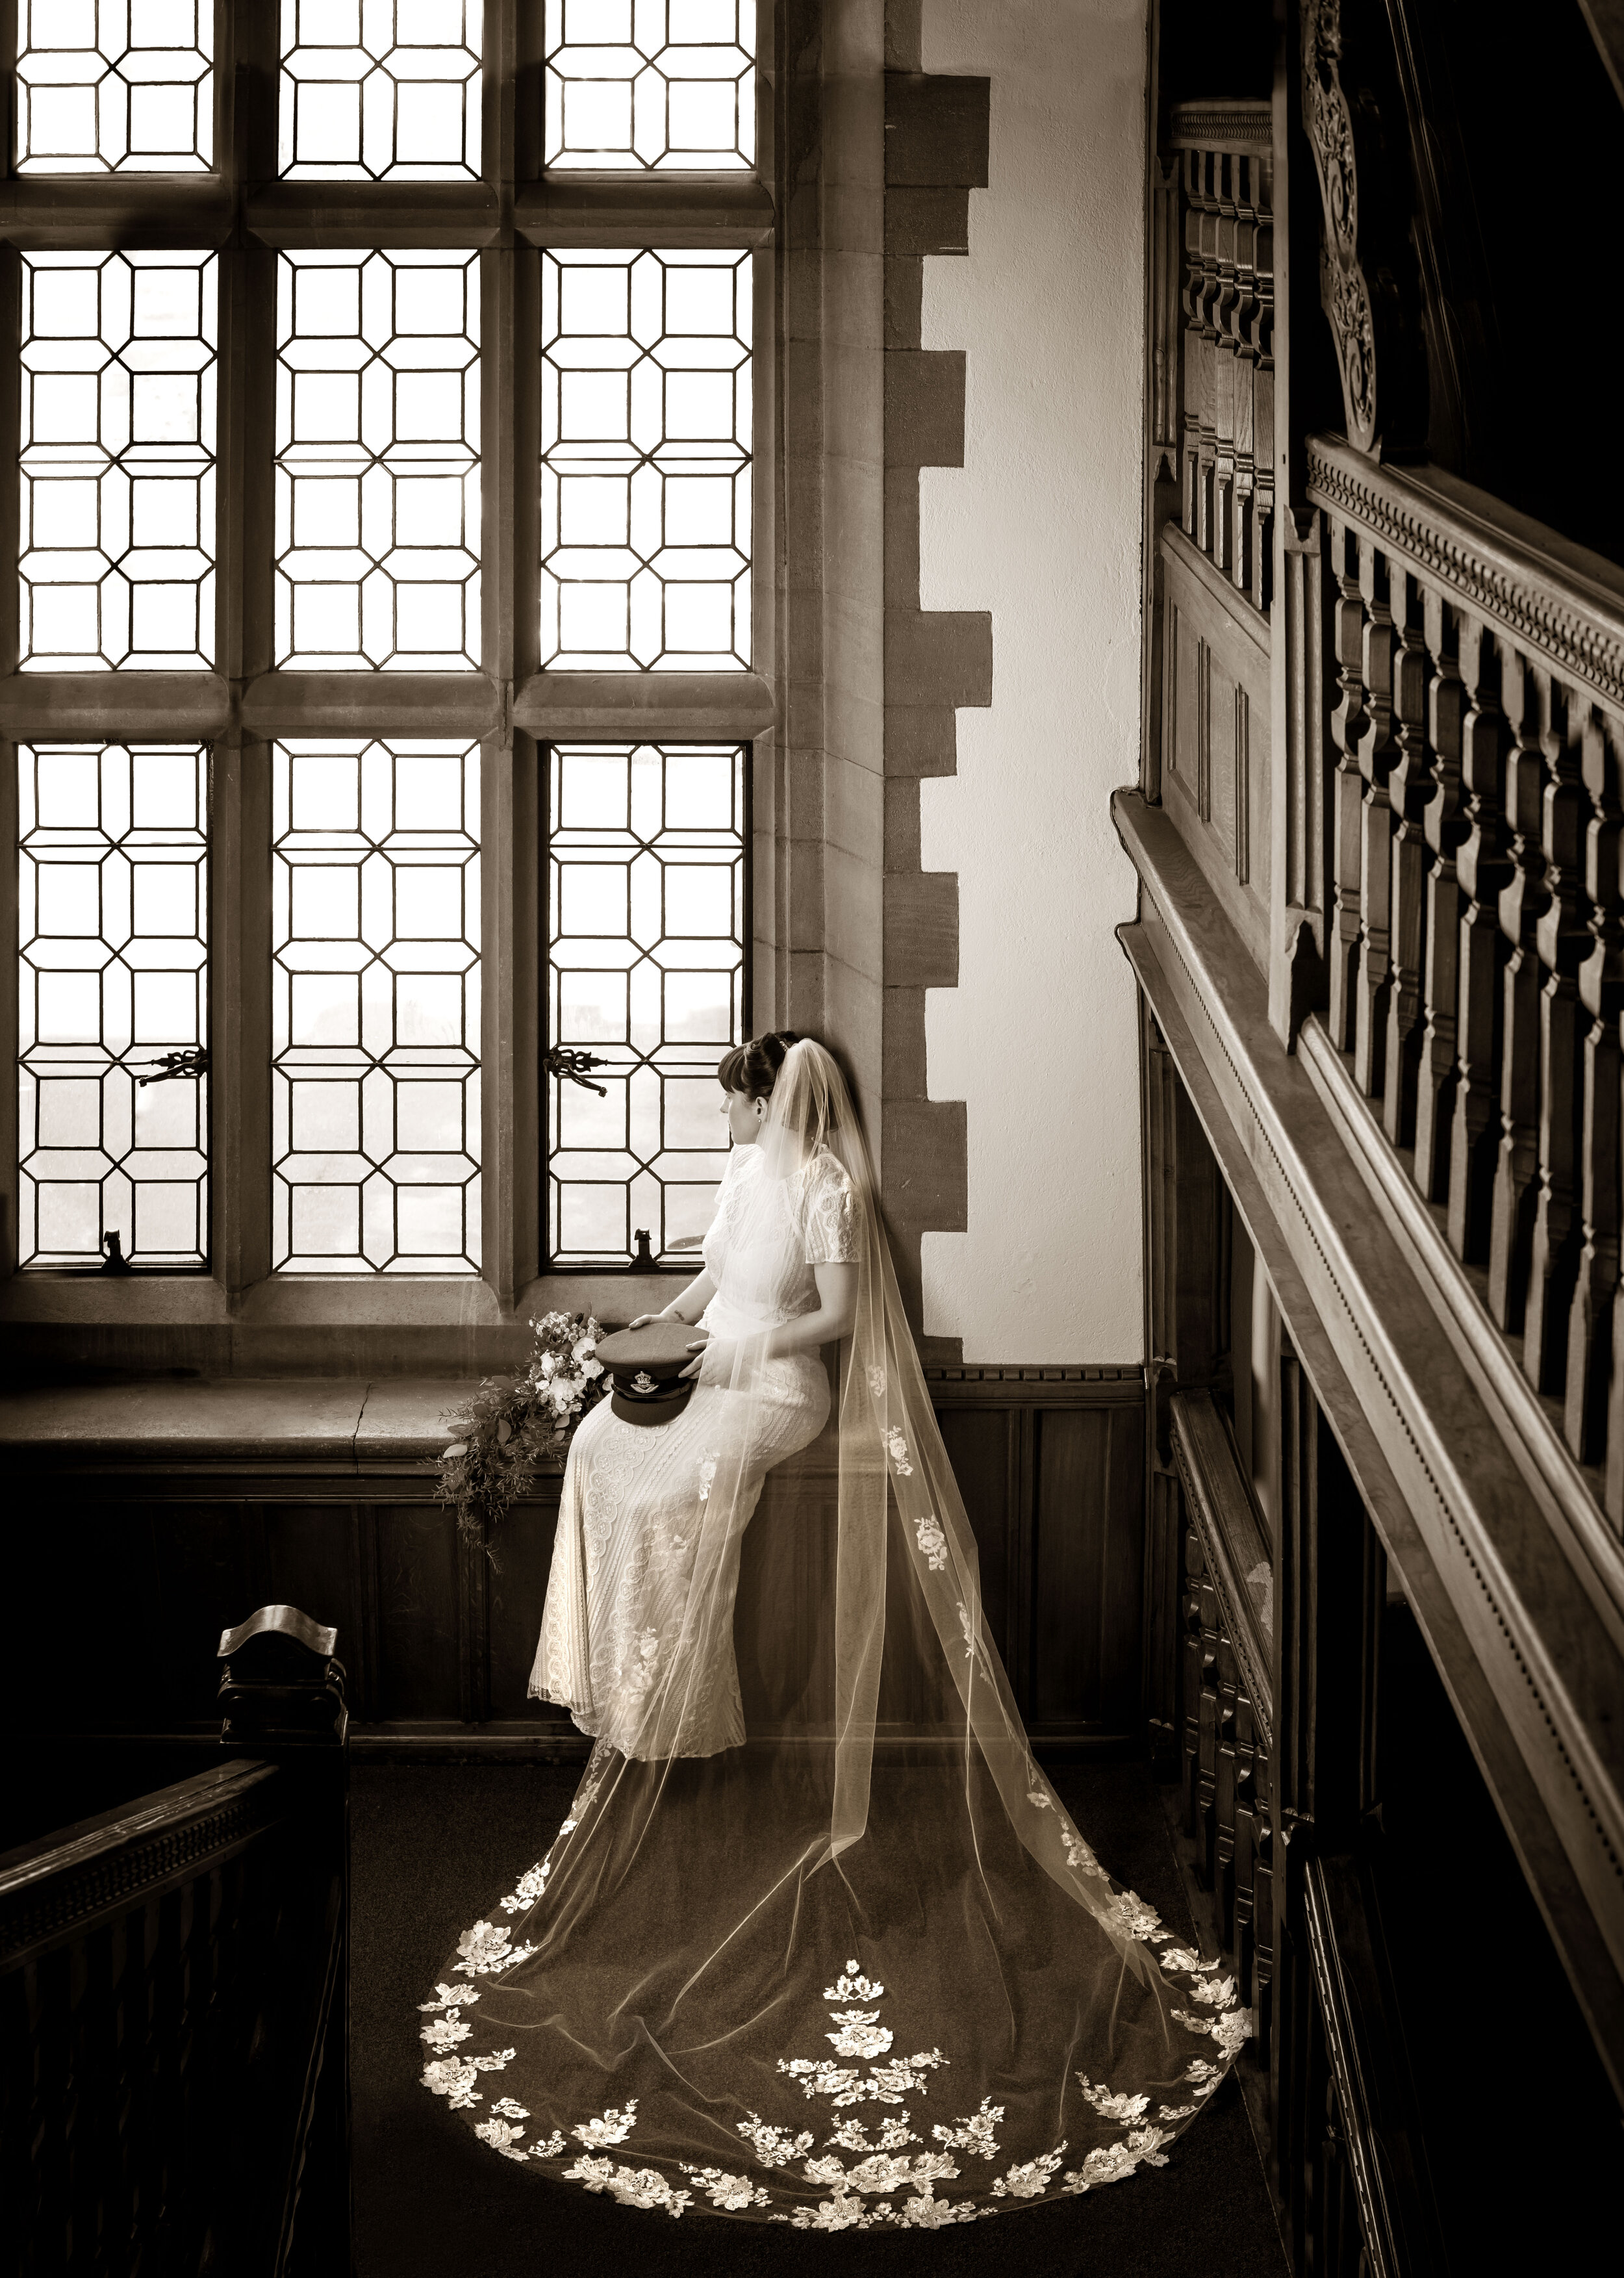 Wedding Dress_Bridal Gown_G n Bri Photography